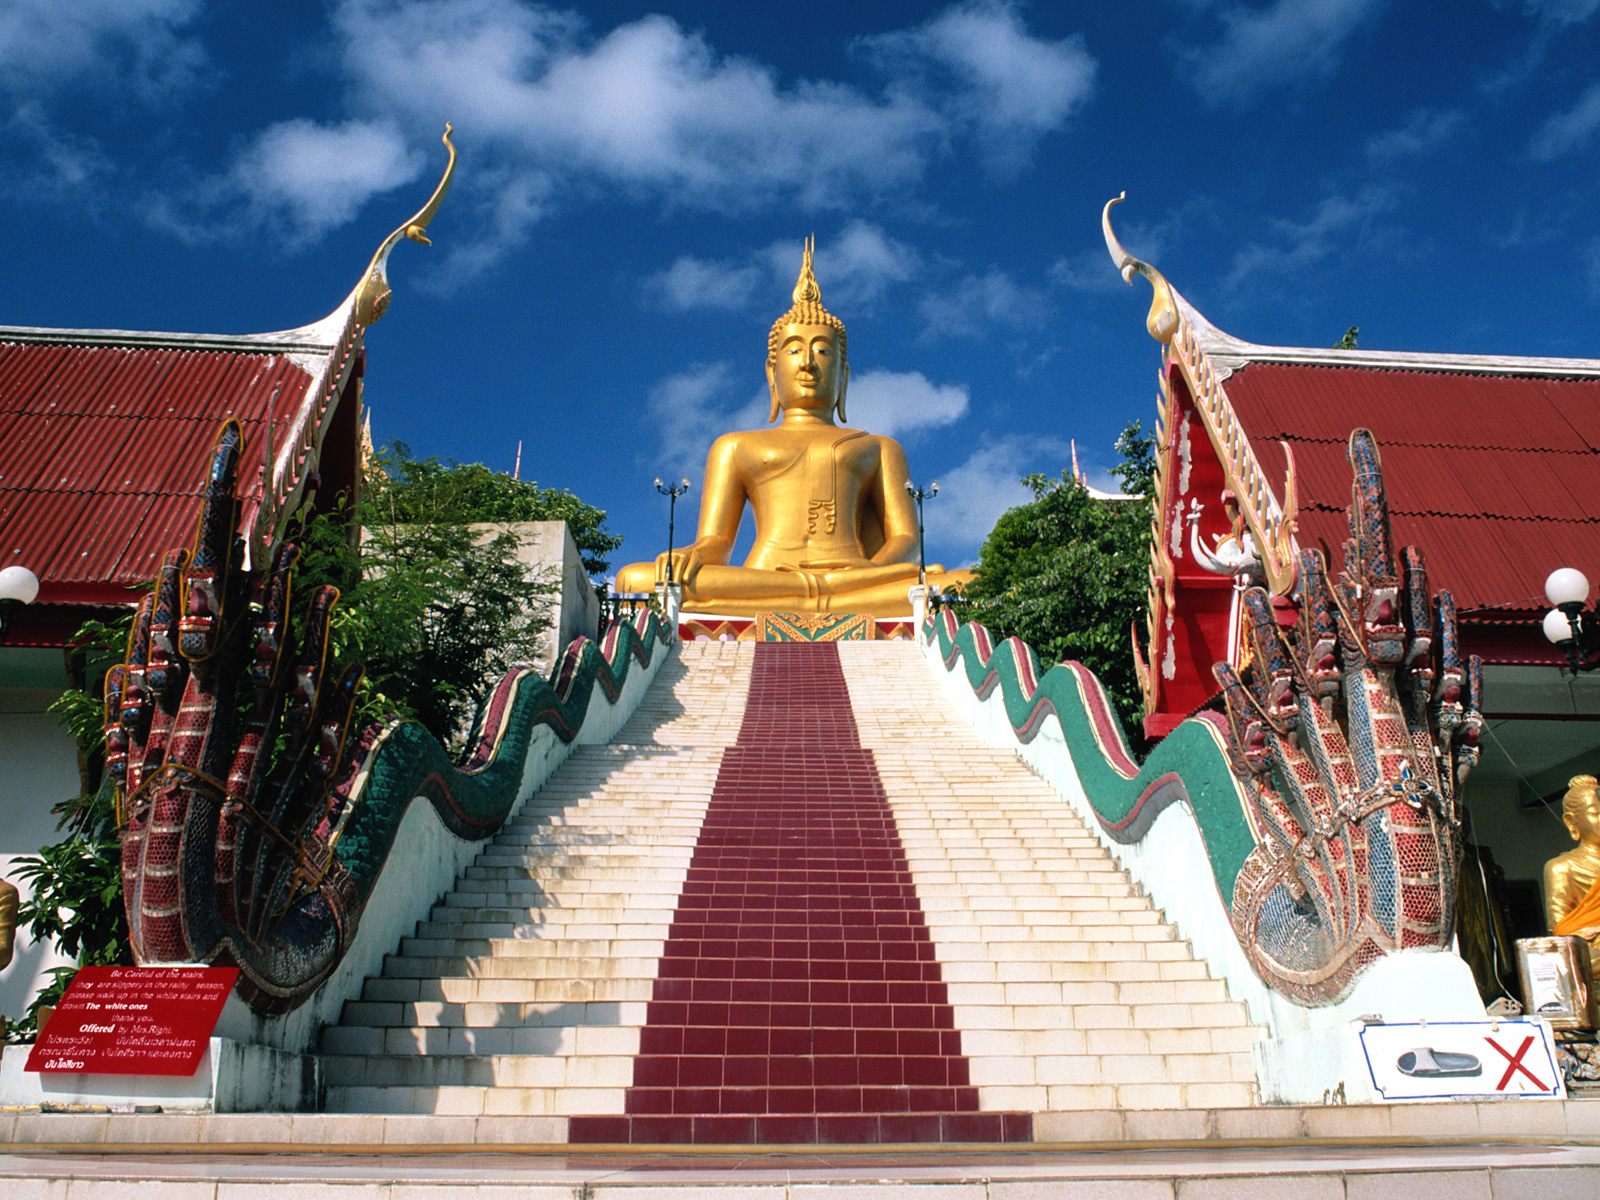 Koh Samui - The Big Buddha